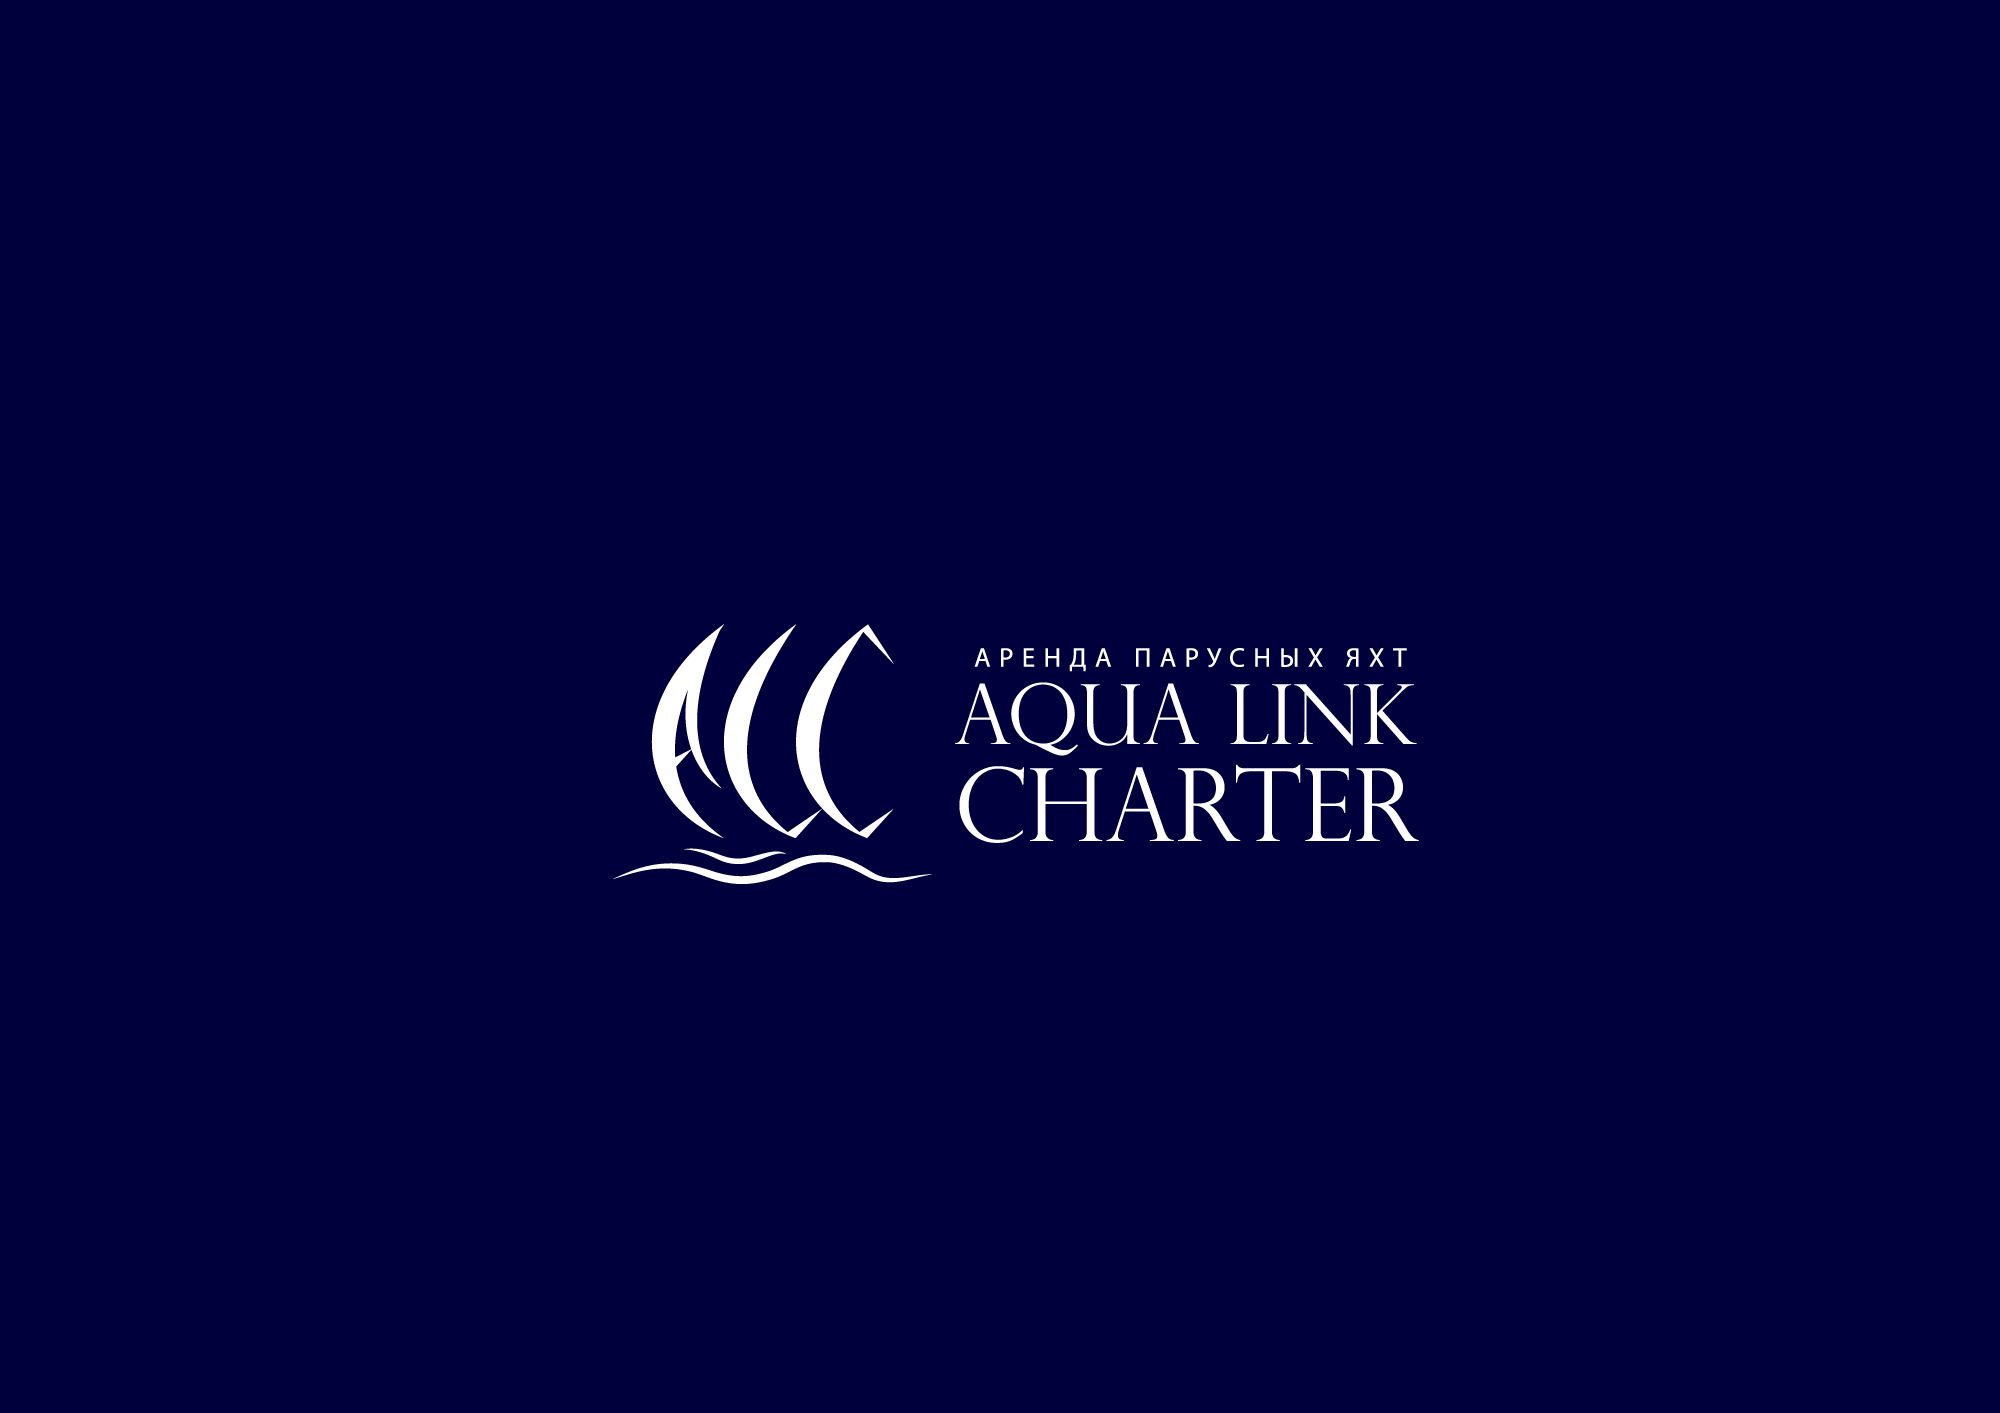 Аренда (чартер) парусных яхт - Aqua Link Charter - дизайнер Alphir